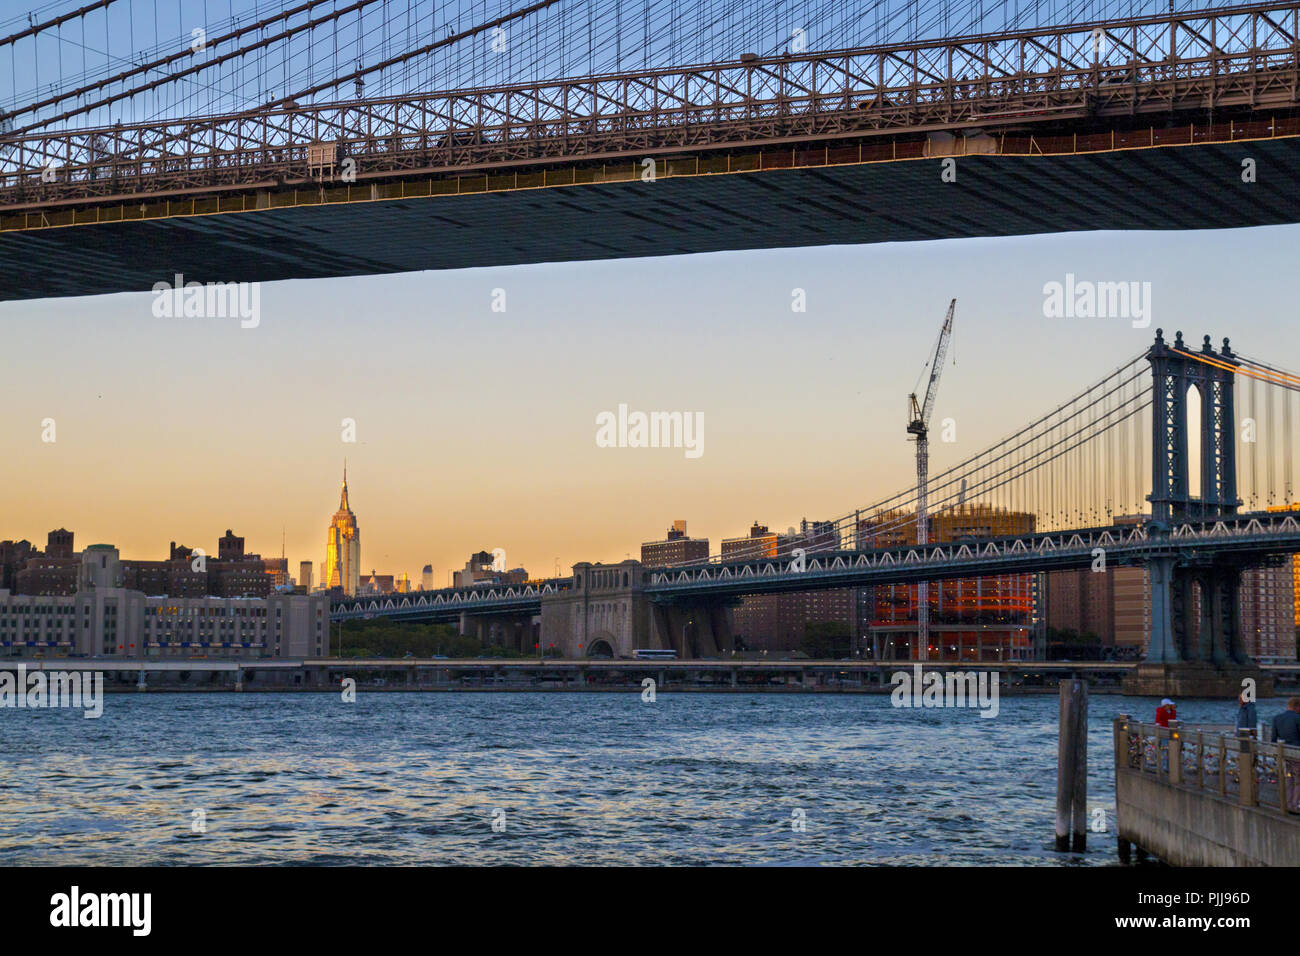 Les ponts de la ville de New York, Manhattan vue du pont Brooklyn Bridge et en face, l'Empire State Building à pied, coucher de soleil lumière, NY USA Banque D'Images